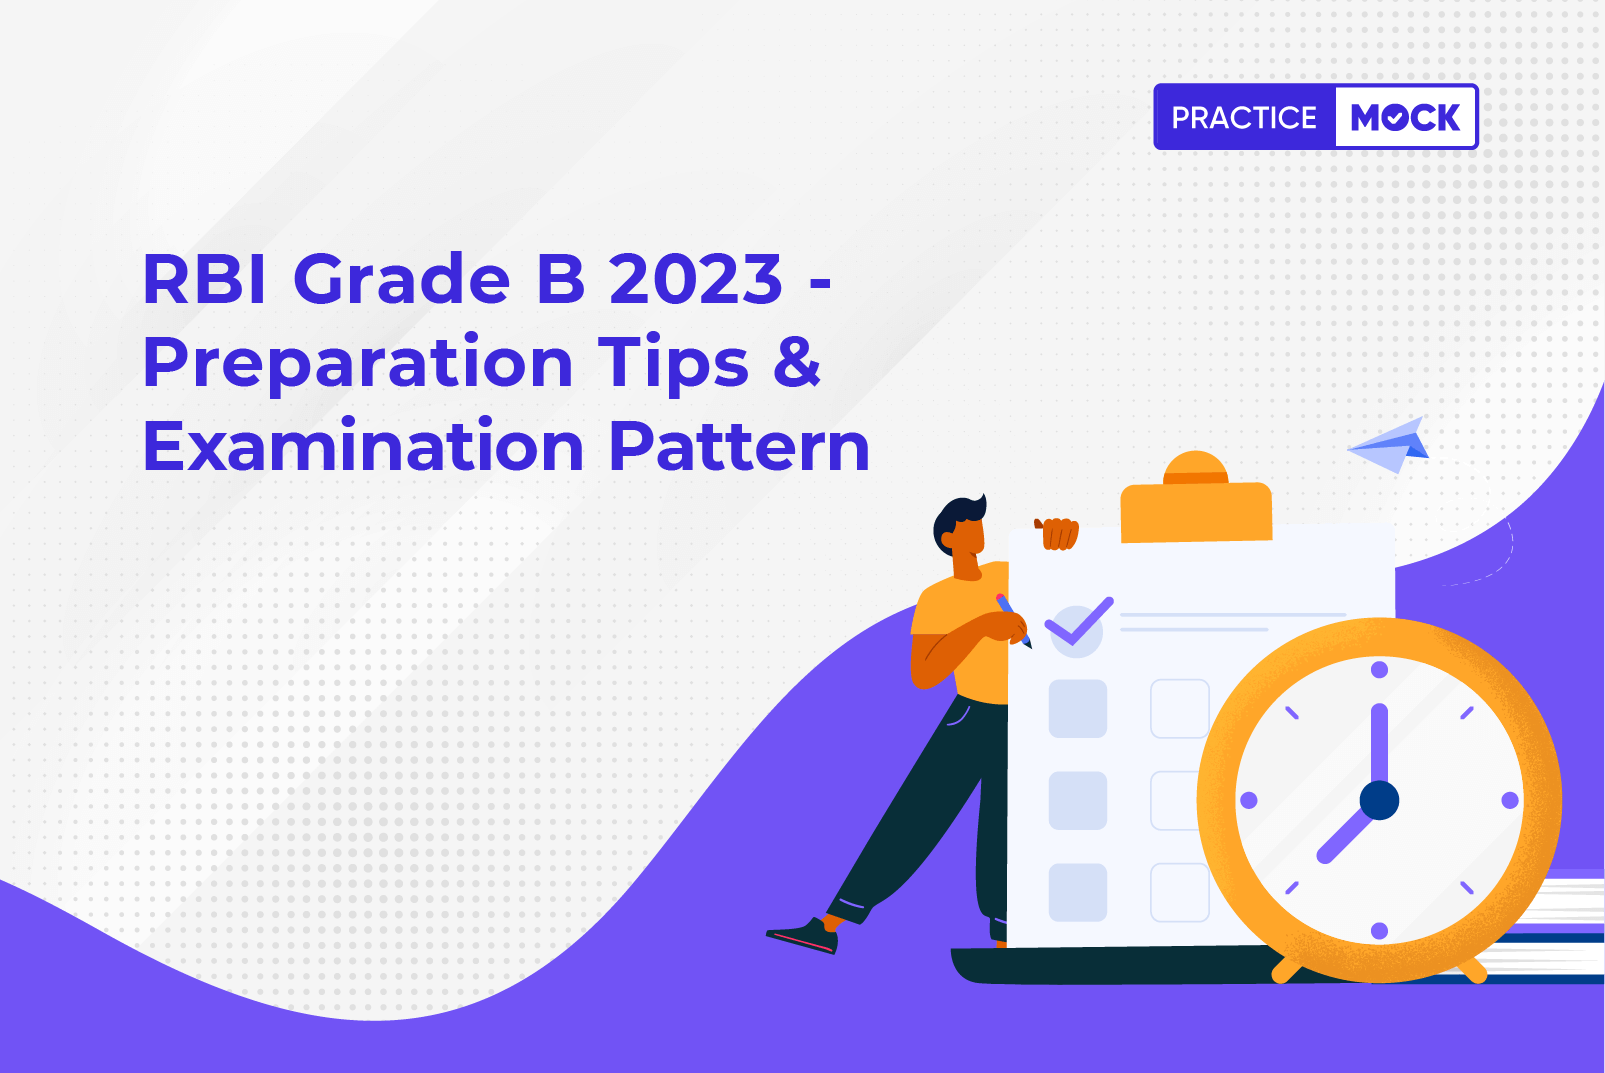 RBI Grade B 2023 - Preparation Tips & Examination Pattern